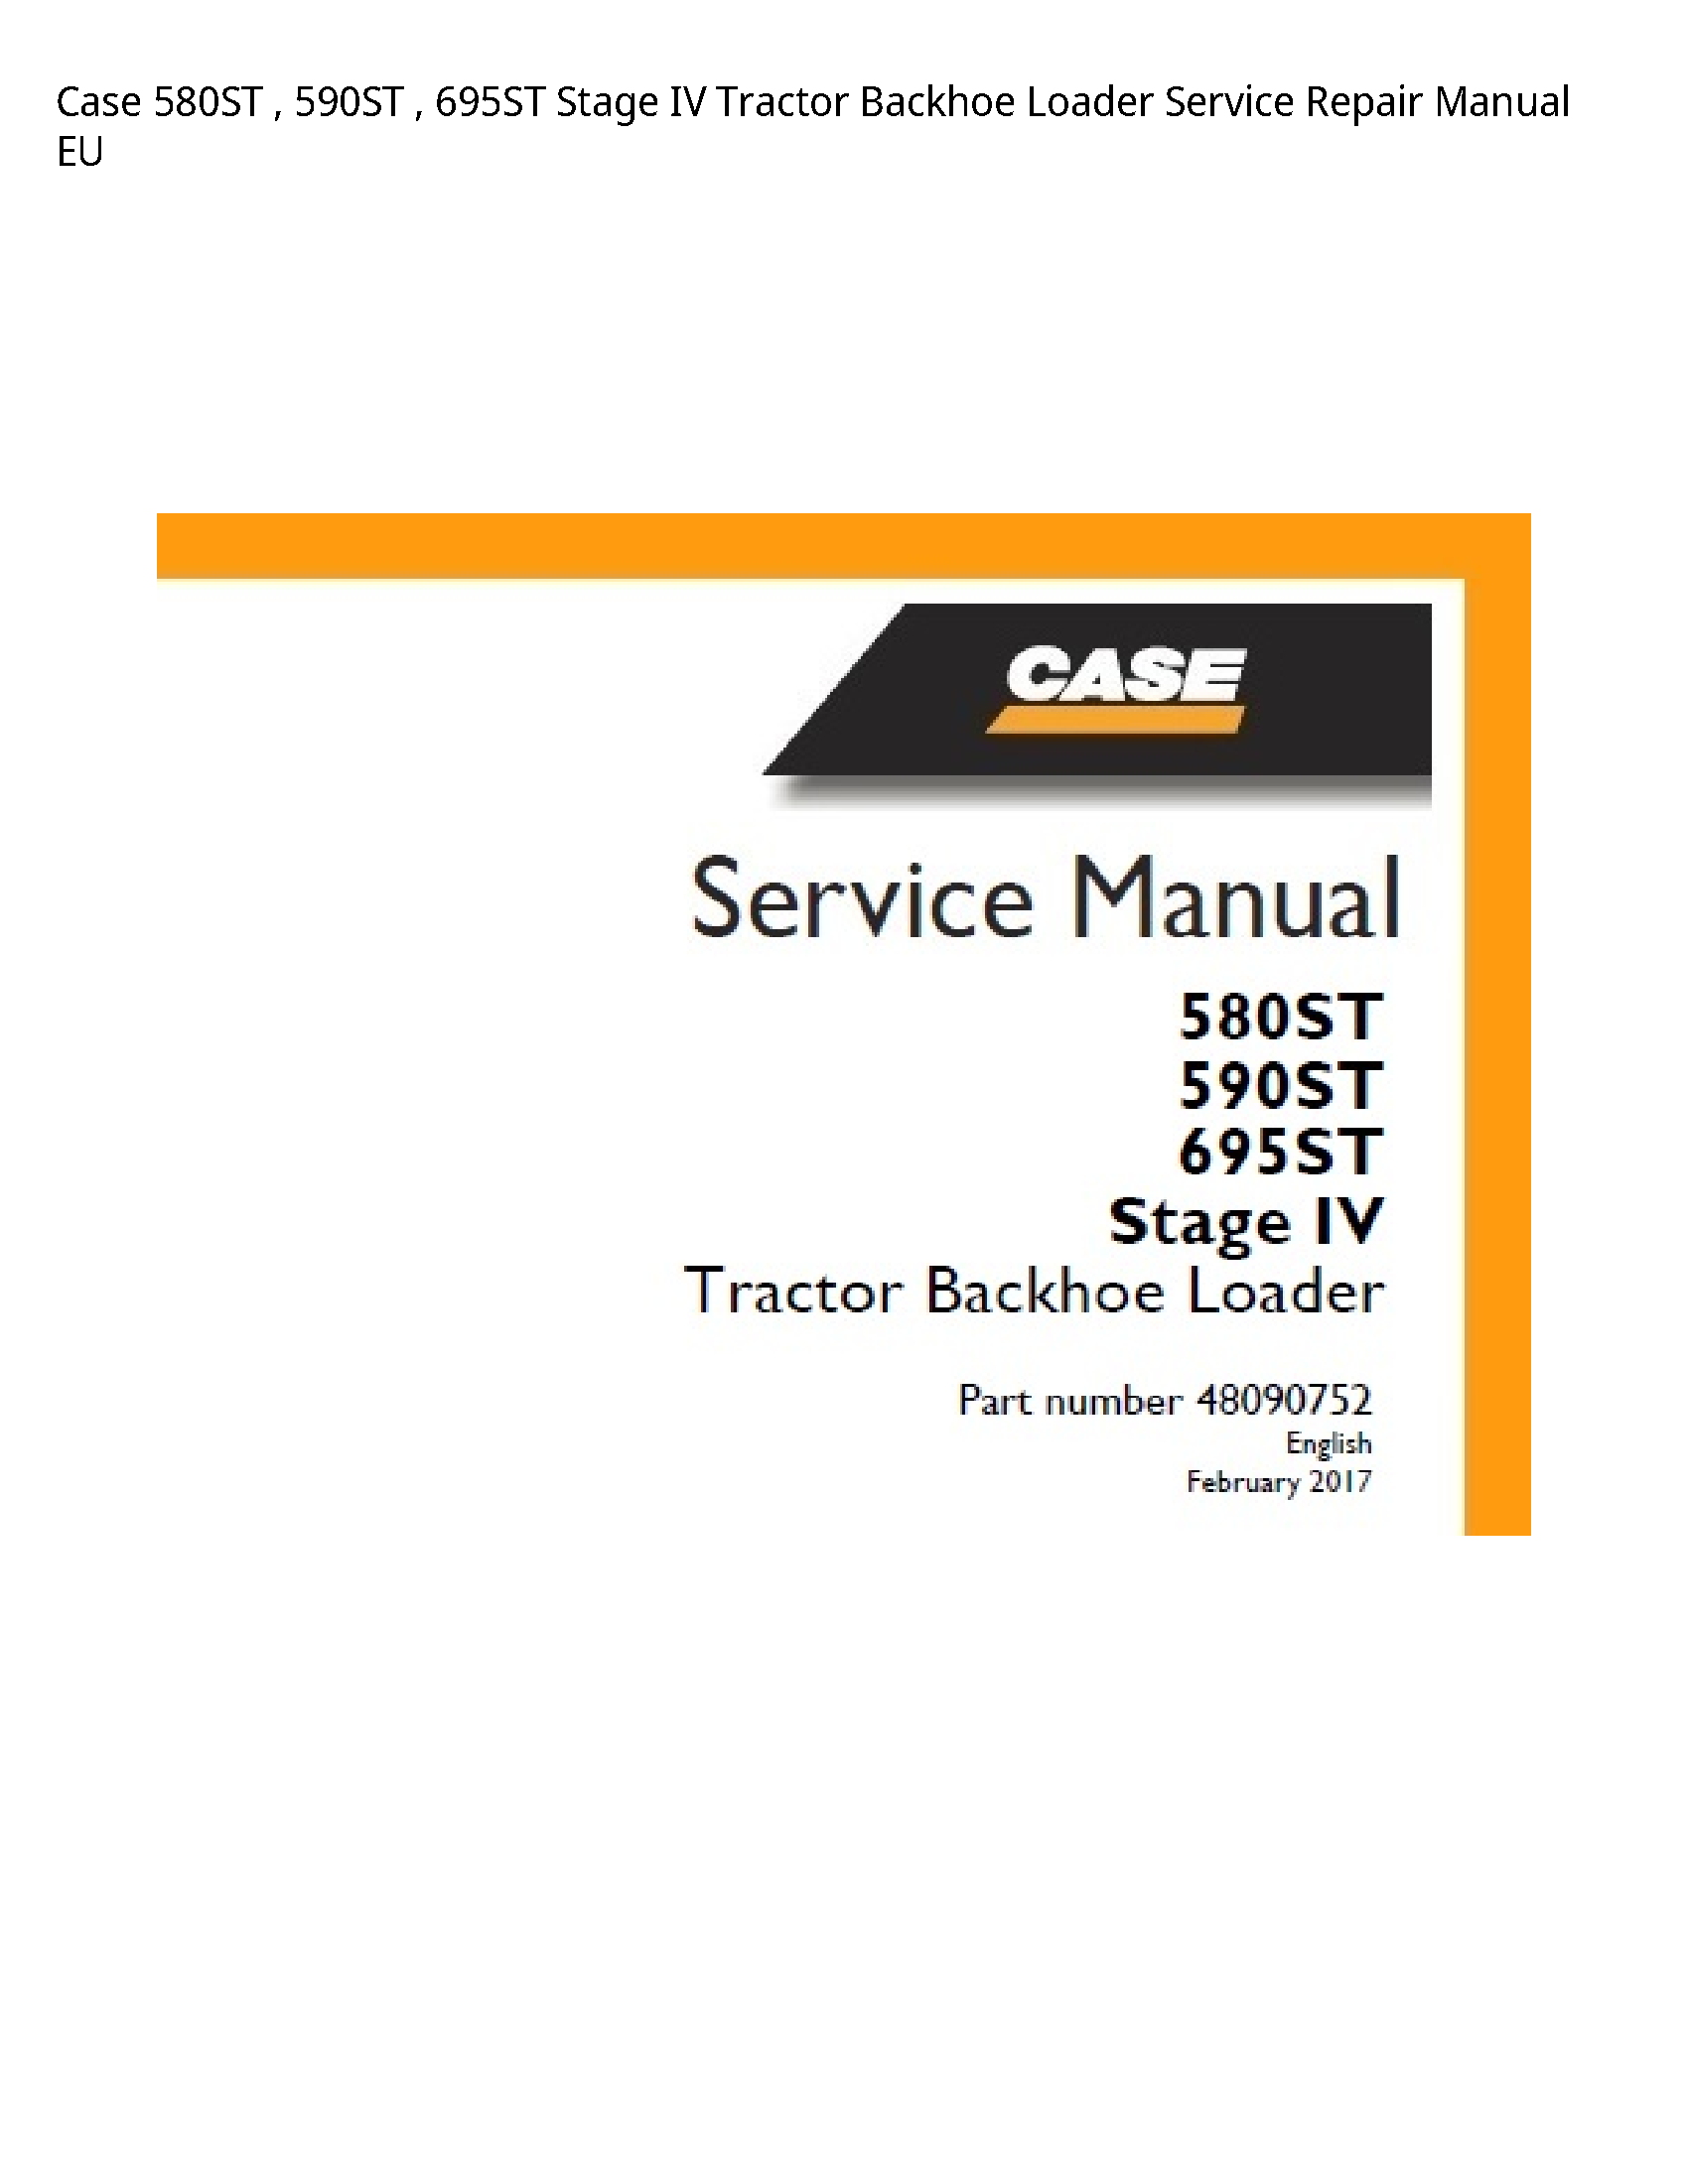 Case/Case IH 580ST Stage IV Tractor Backhoe Loader manual